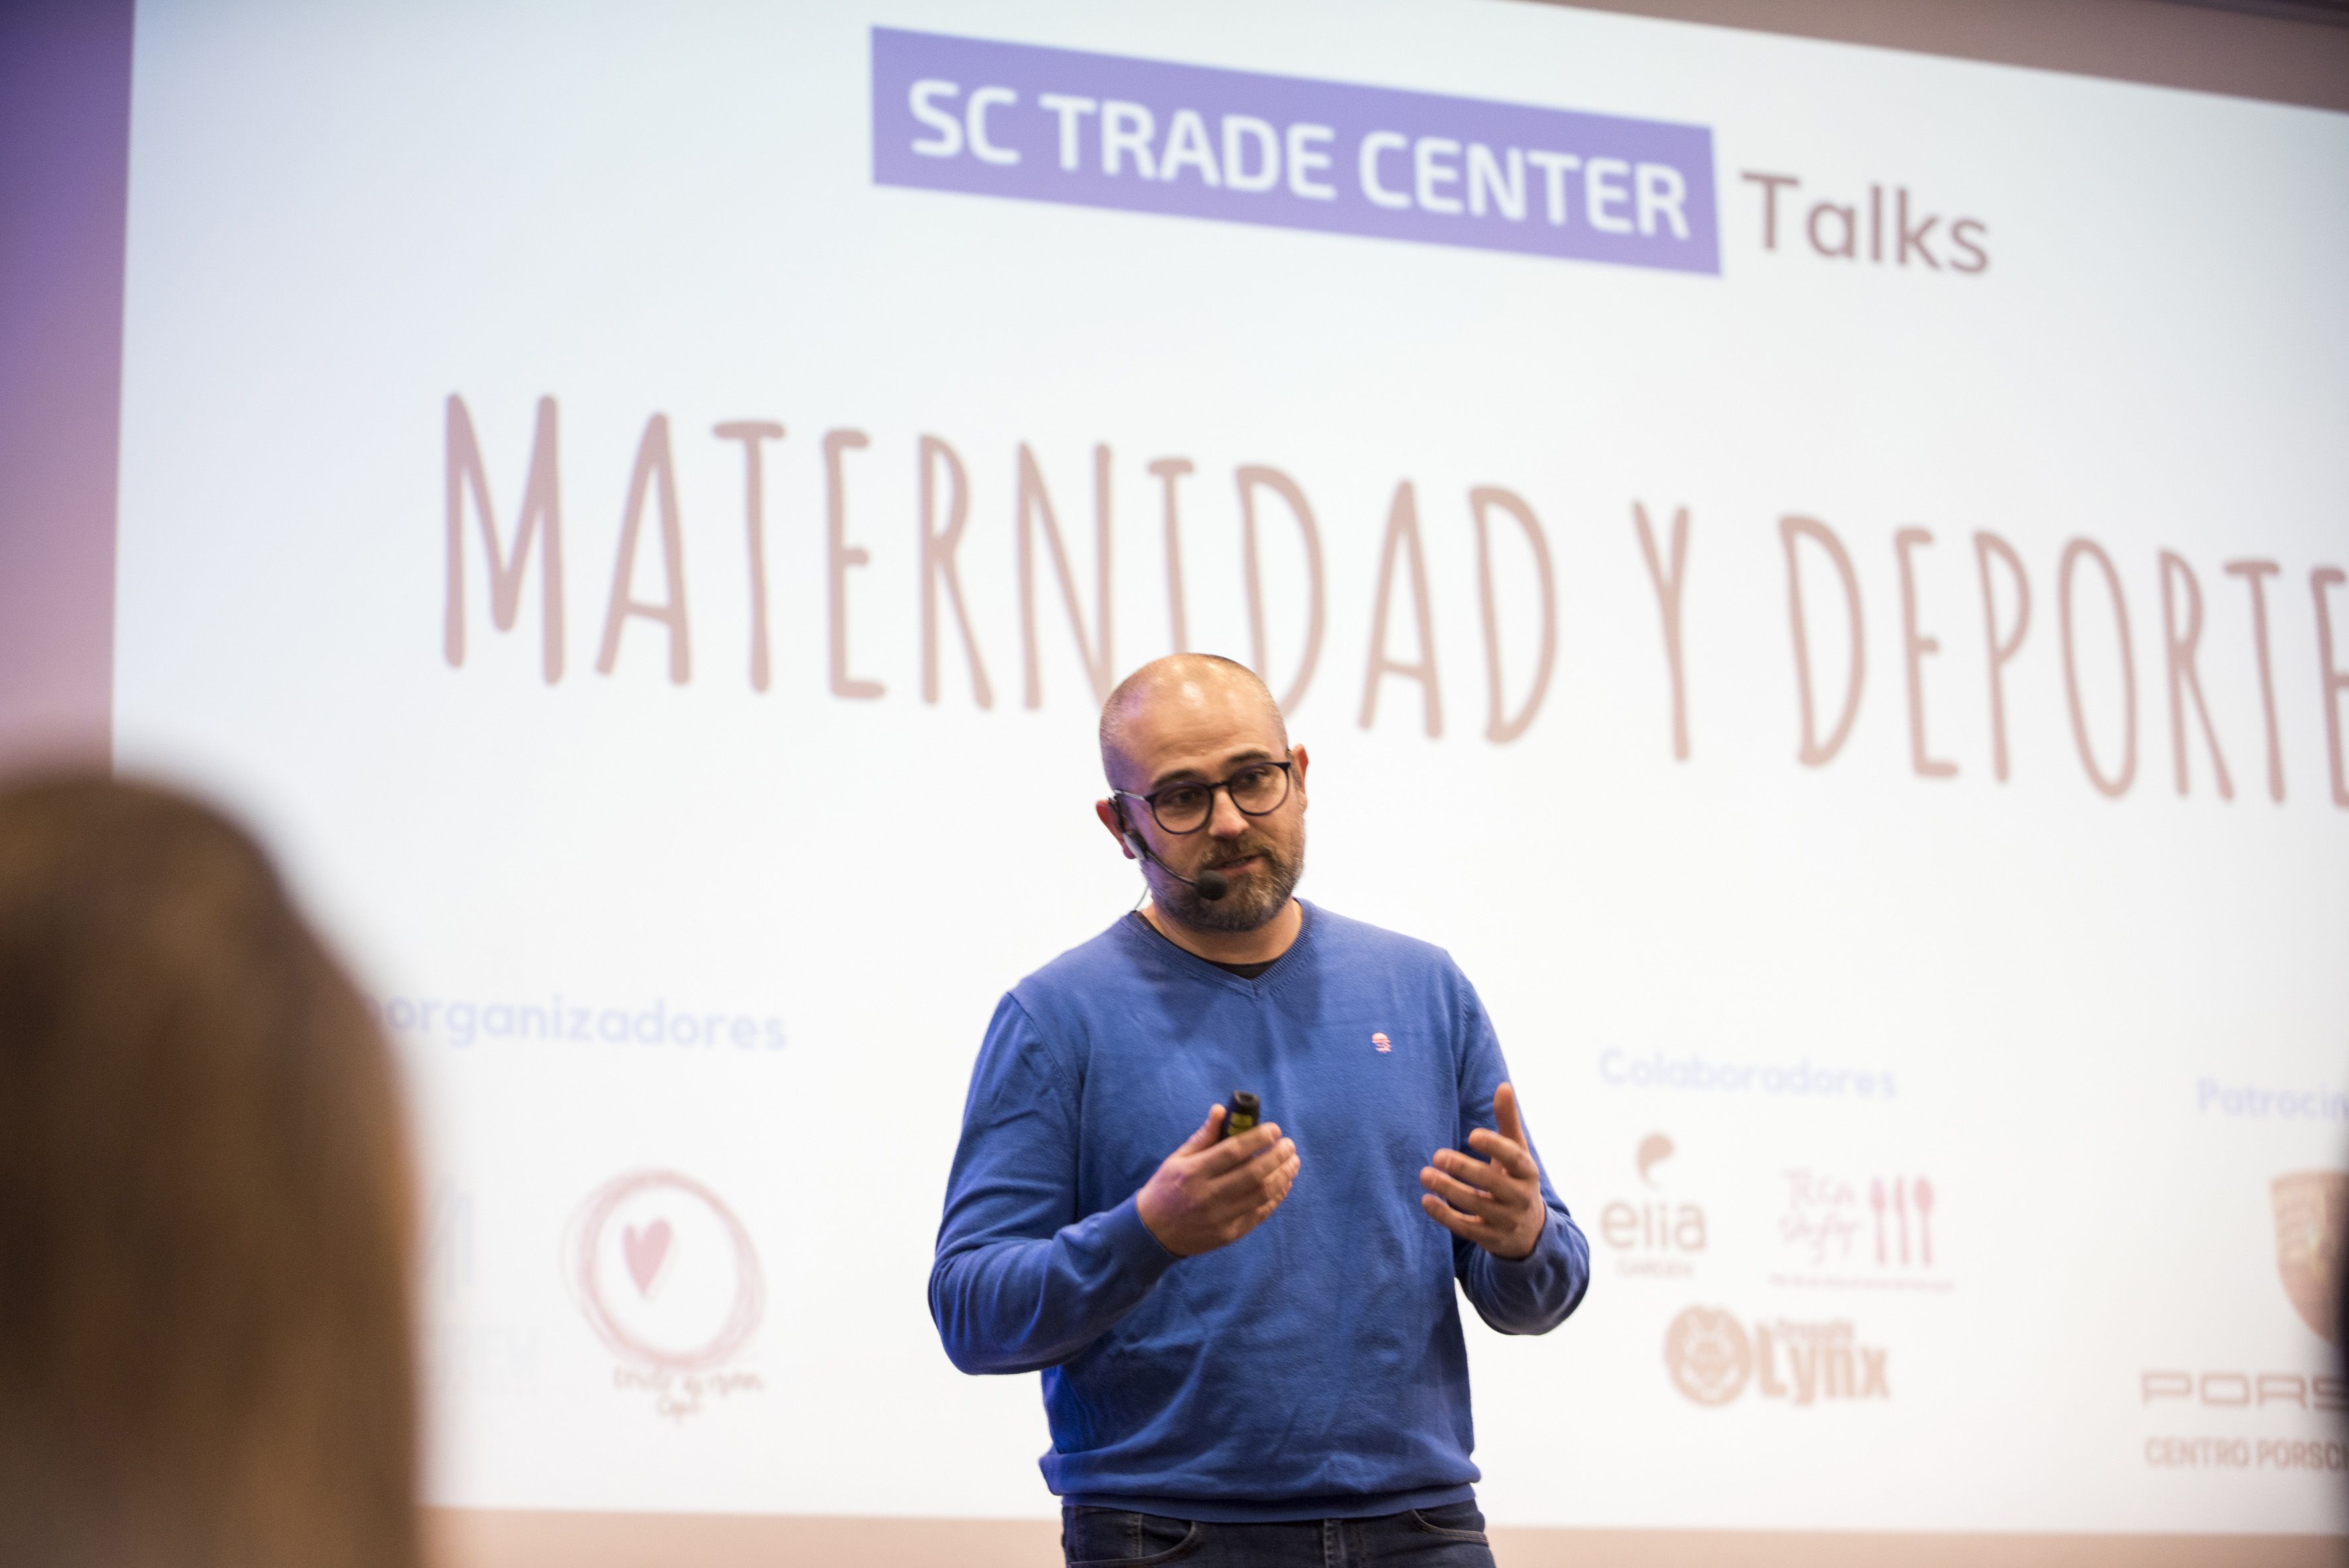 El periodista esportiu, Marc Martín, va estar el presentador de les SC Trade Center Talks. FOTO: Bernat Millet